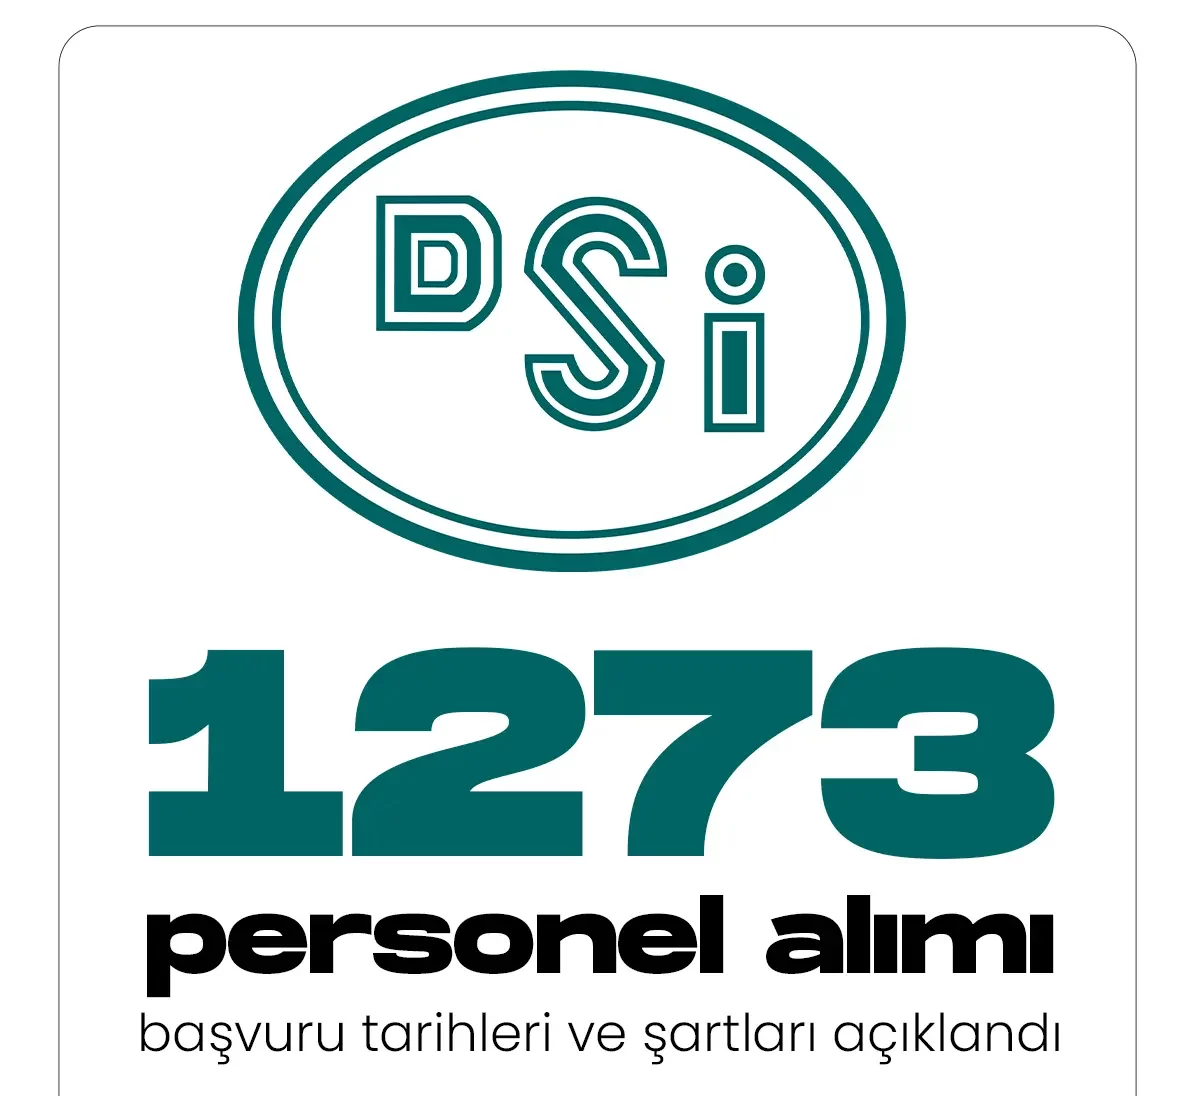 DSİ 1273 personel alımı başvuru tarihleri ve şartları.